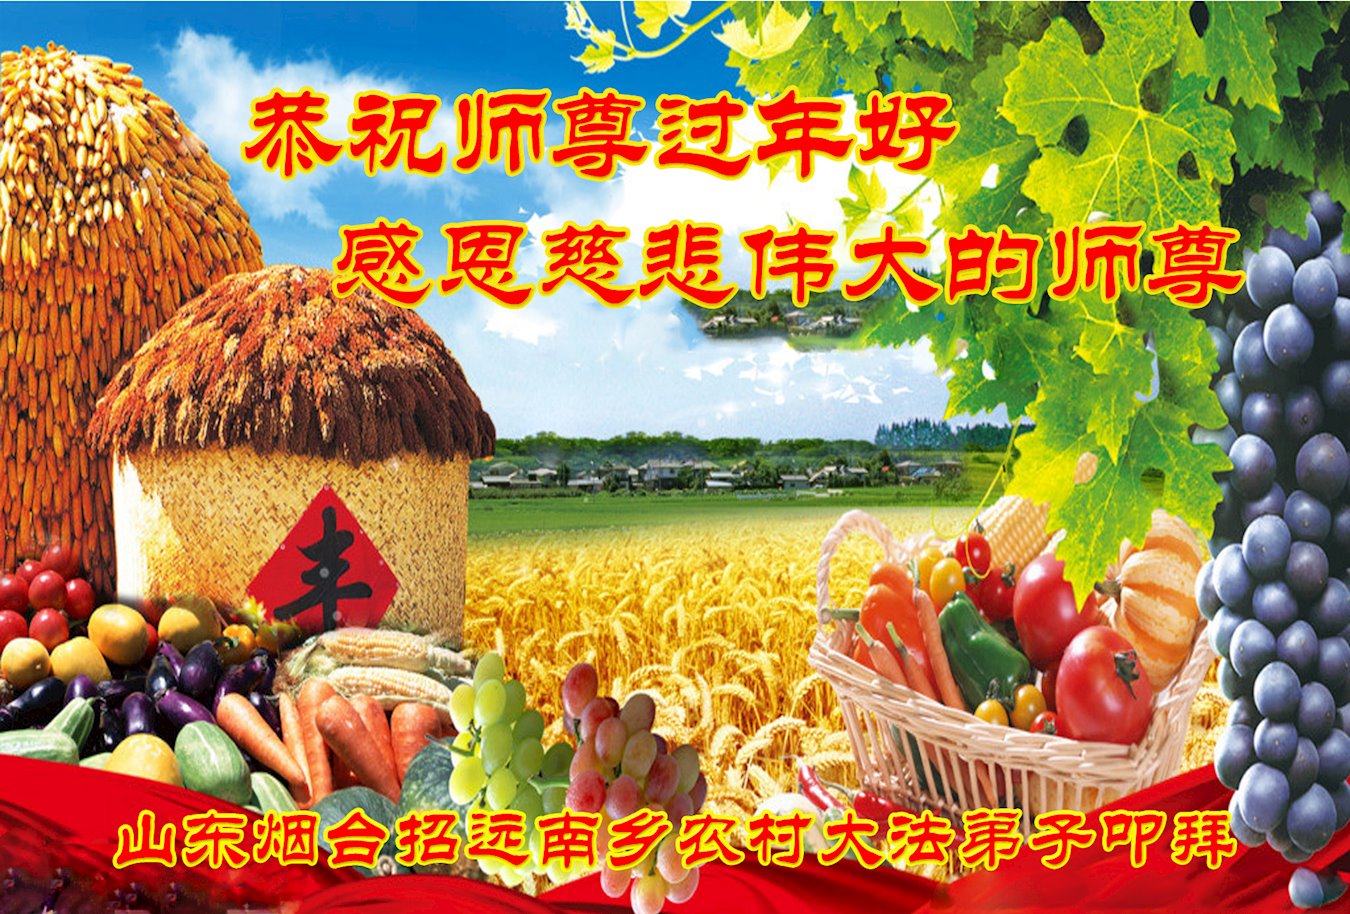 Image for article Les pratiquants de Falun Dafa de Pékin souhaitent respectueusement au vénérable Maître Li Hongzhi un bon Nouvel An chinois ! (24 vœux)